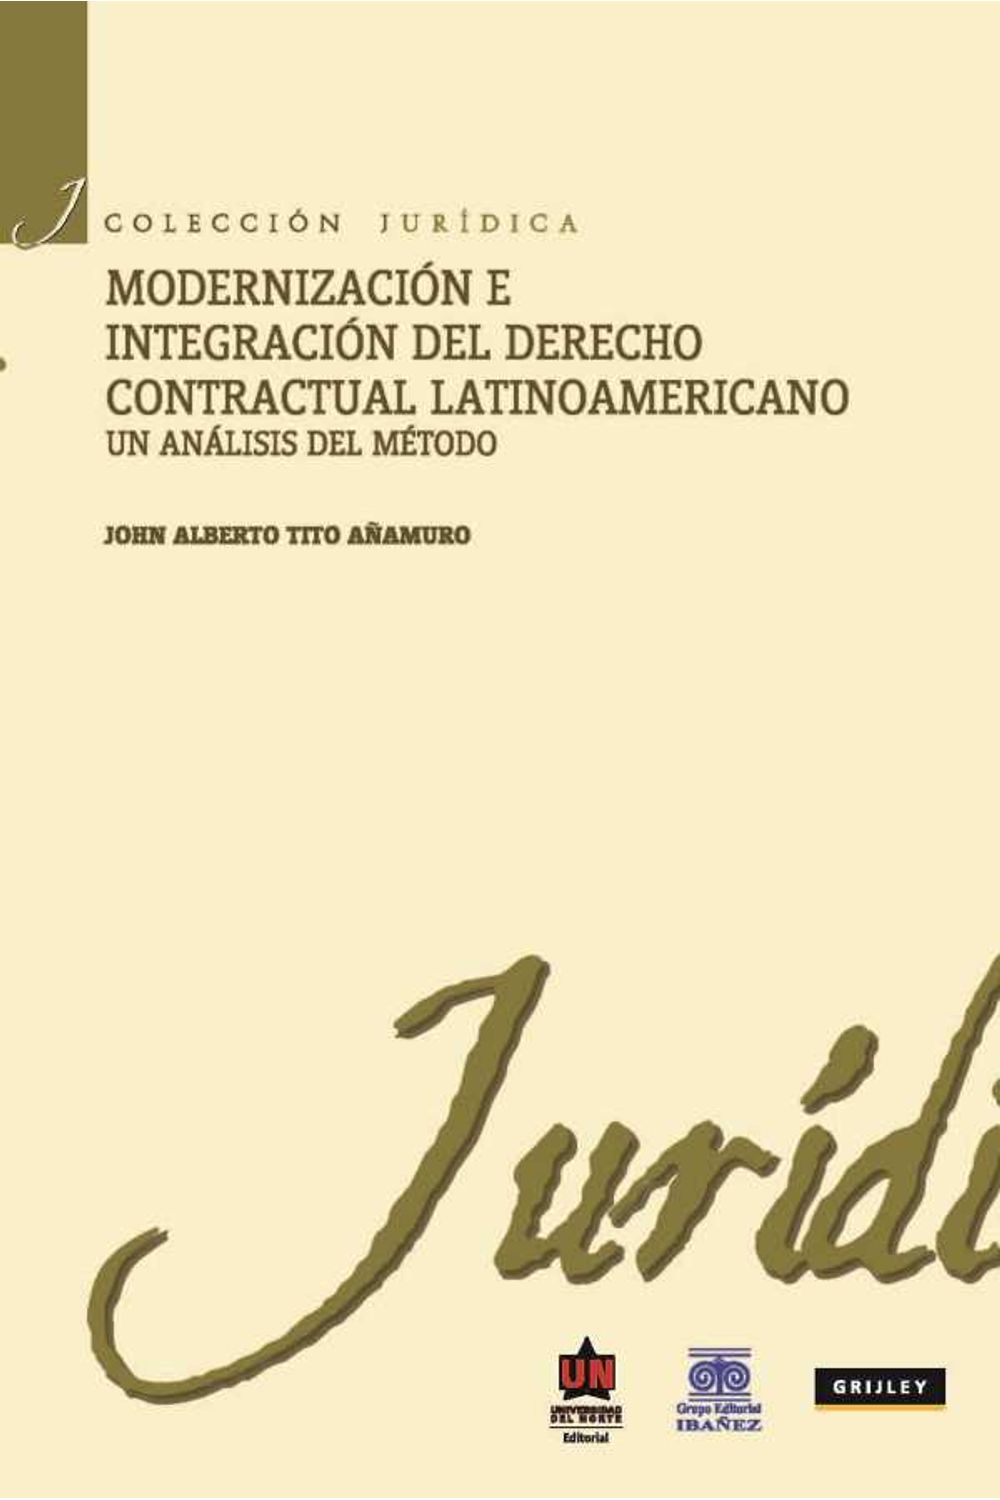 bw-modernizacioacuten-e-integracioacuten-del-derecho-contractual-latinoamericano-un-anaacutelisis-del-meacutetodo-u-del-norte-editorial-9789587411966